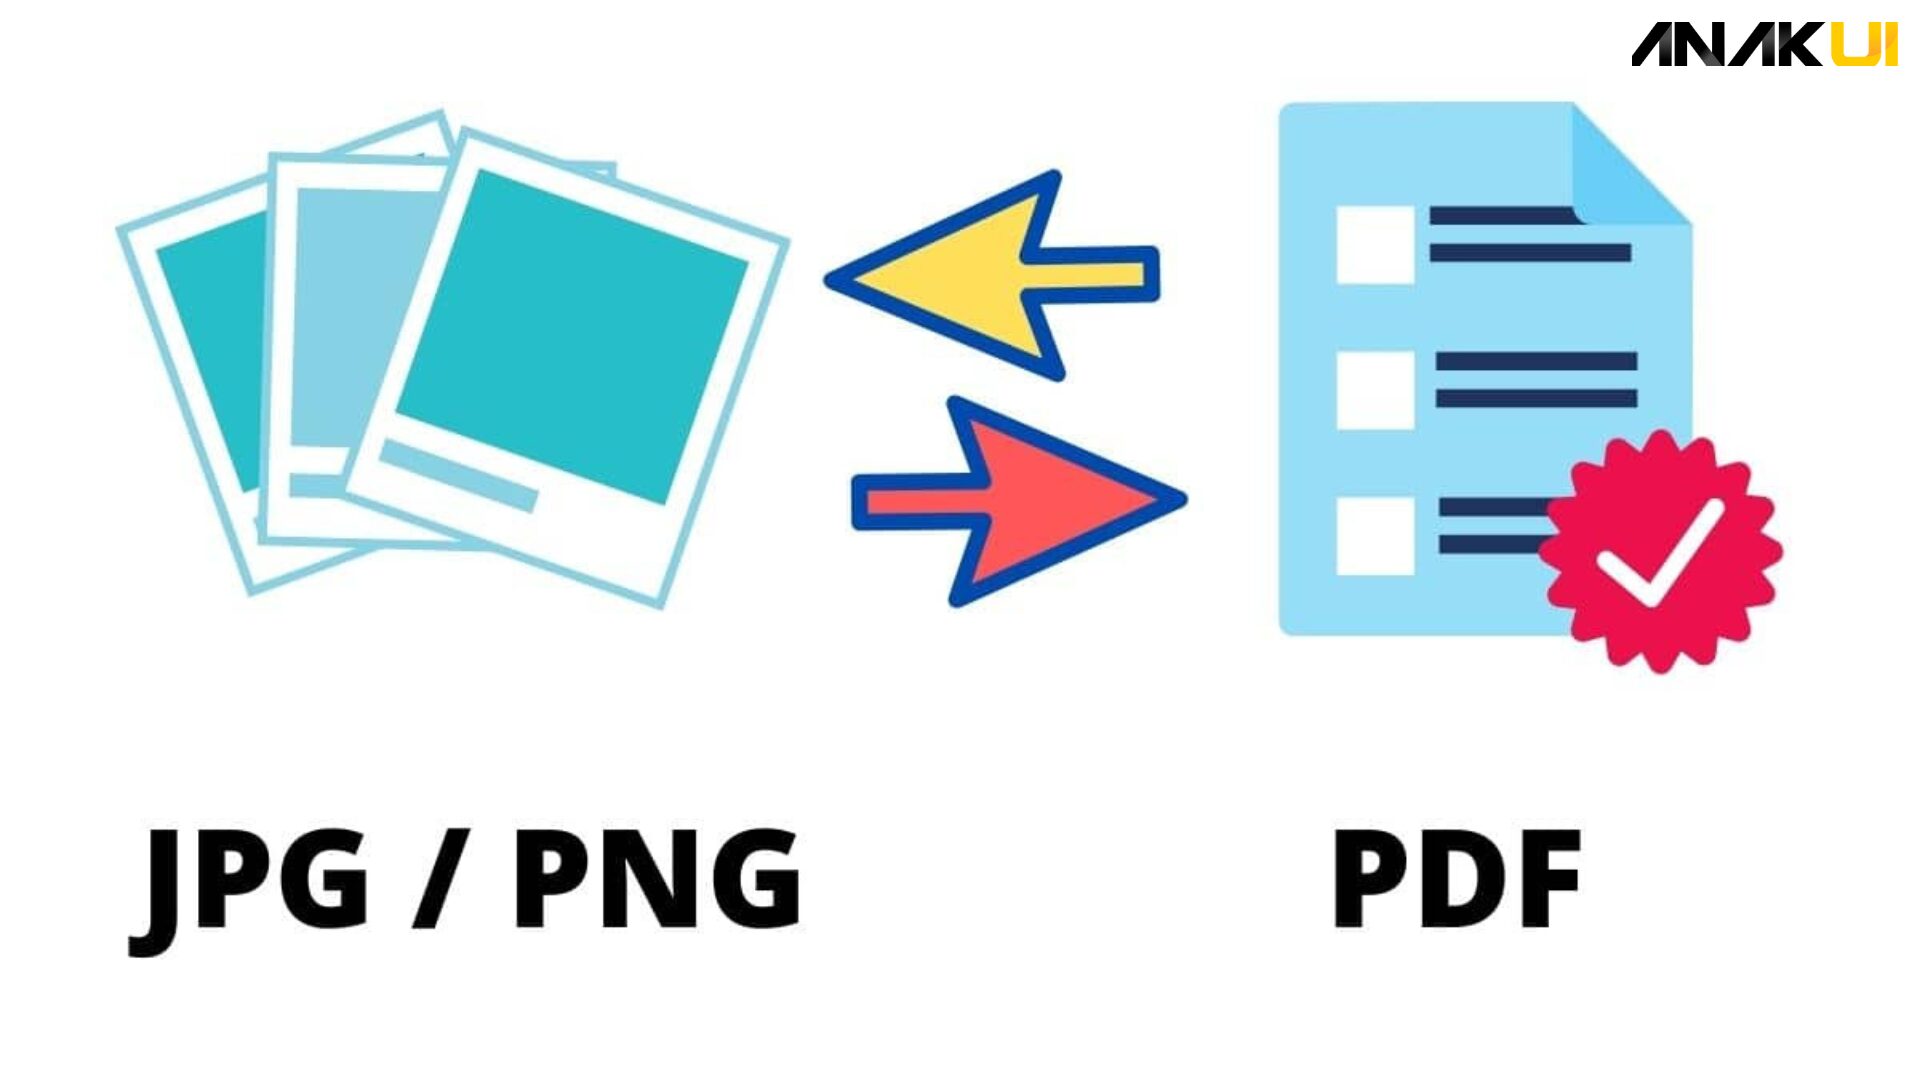 Cara Mengubah Foto Ke PDF